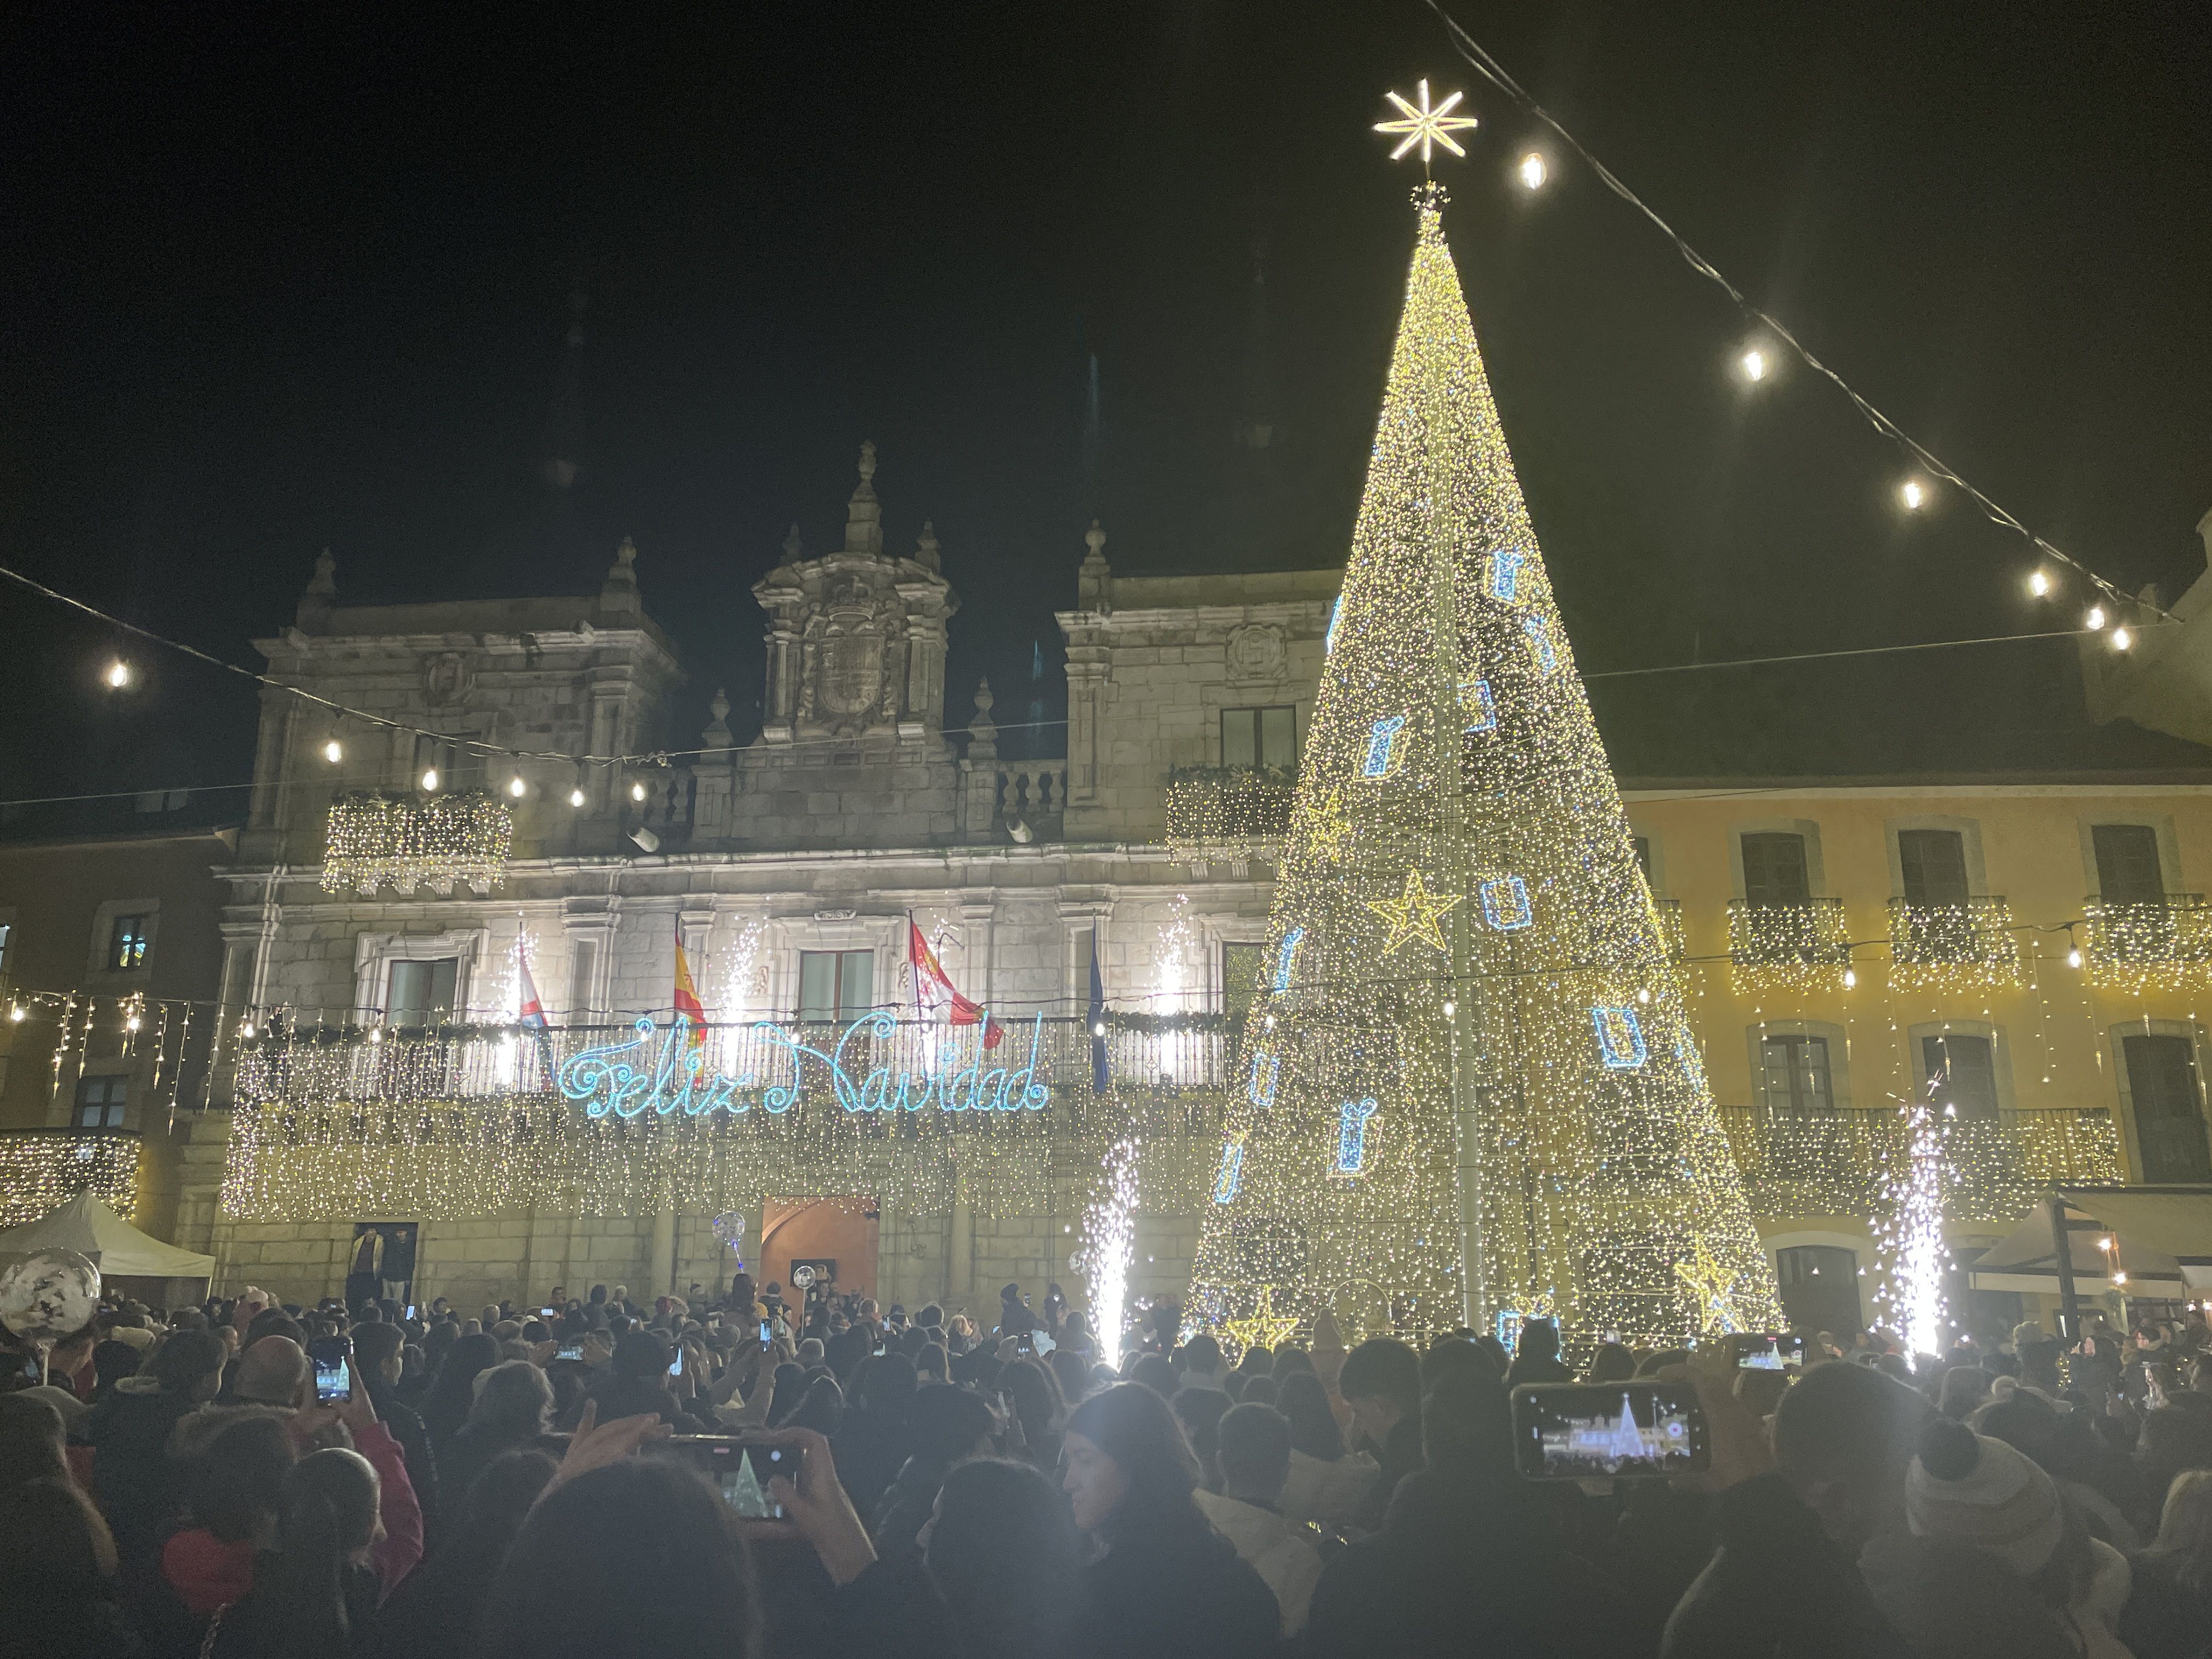 Iluminación navideña en la Plaza del Ayuntamiento de Ponferrada. | Javier Fernández